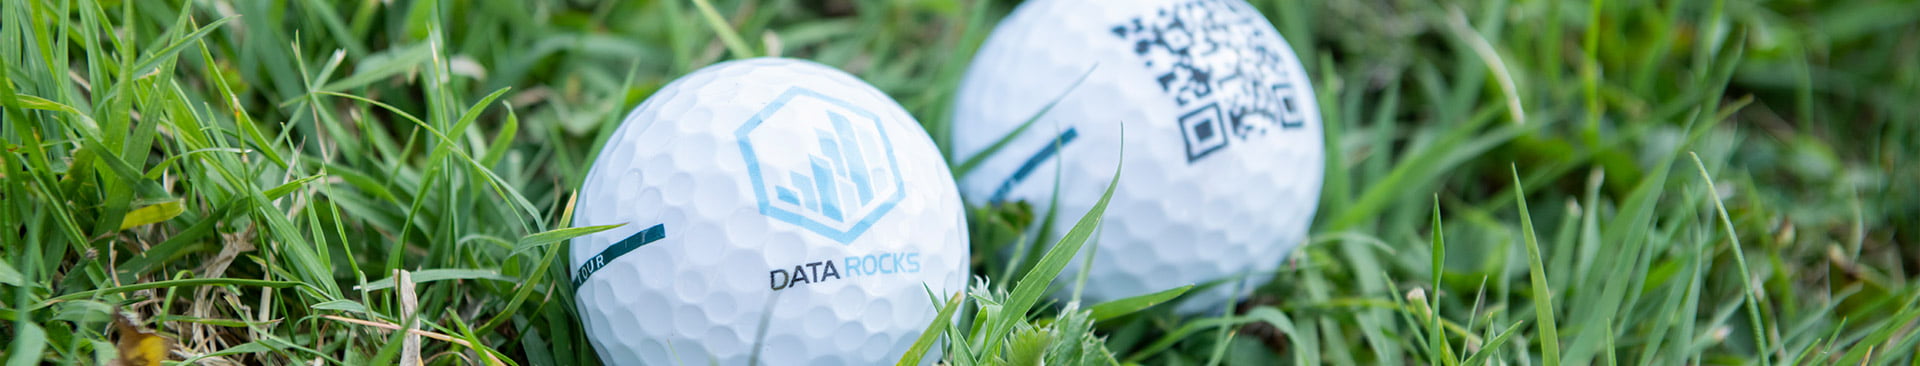 header-datarocks-golf